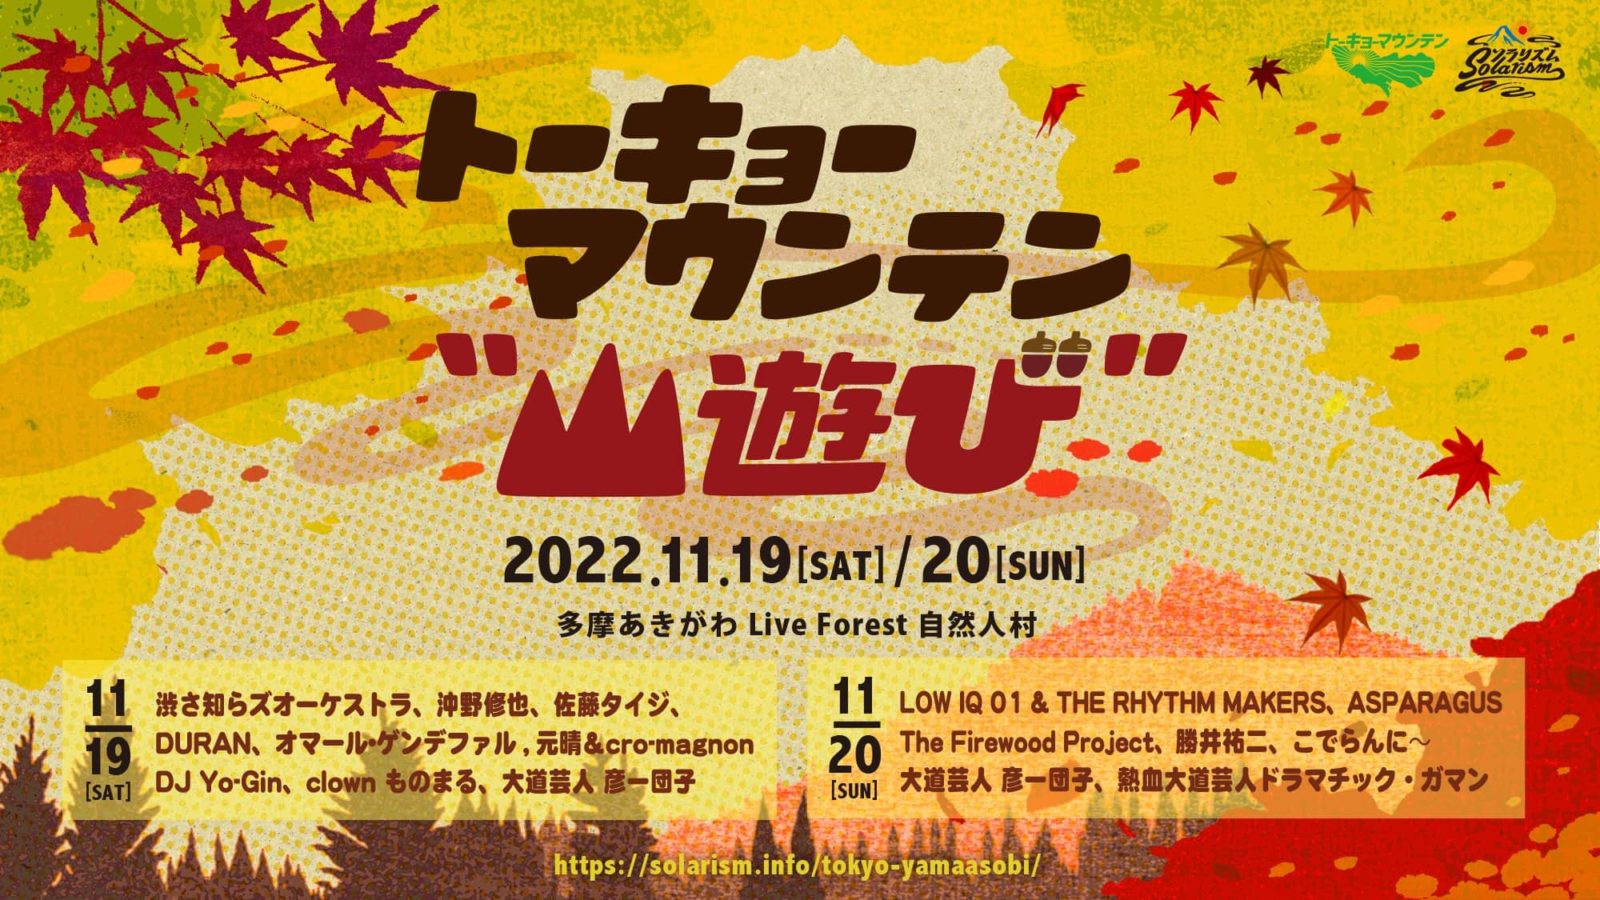 フェスカレンダー 日本全国の野外フェス一覧 音楽フェスまとめで 今後の予定を立てよう アースガーデン